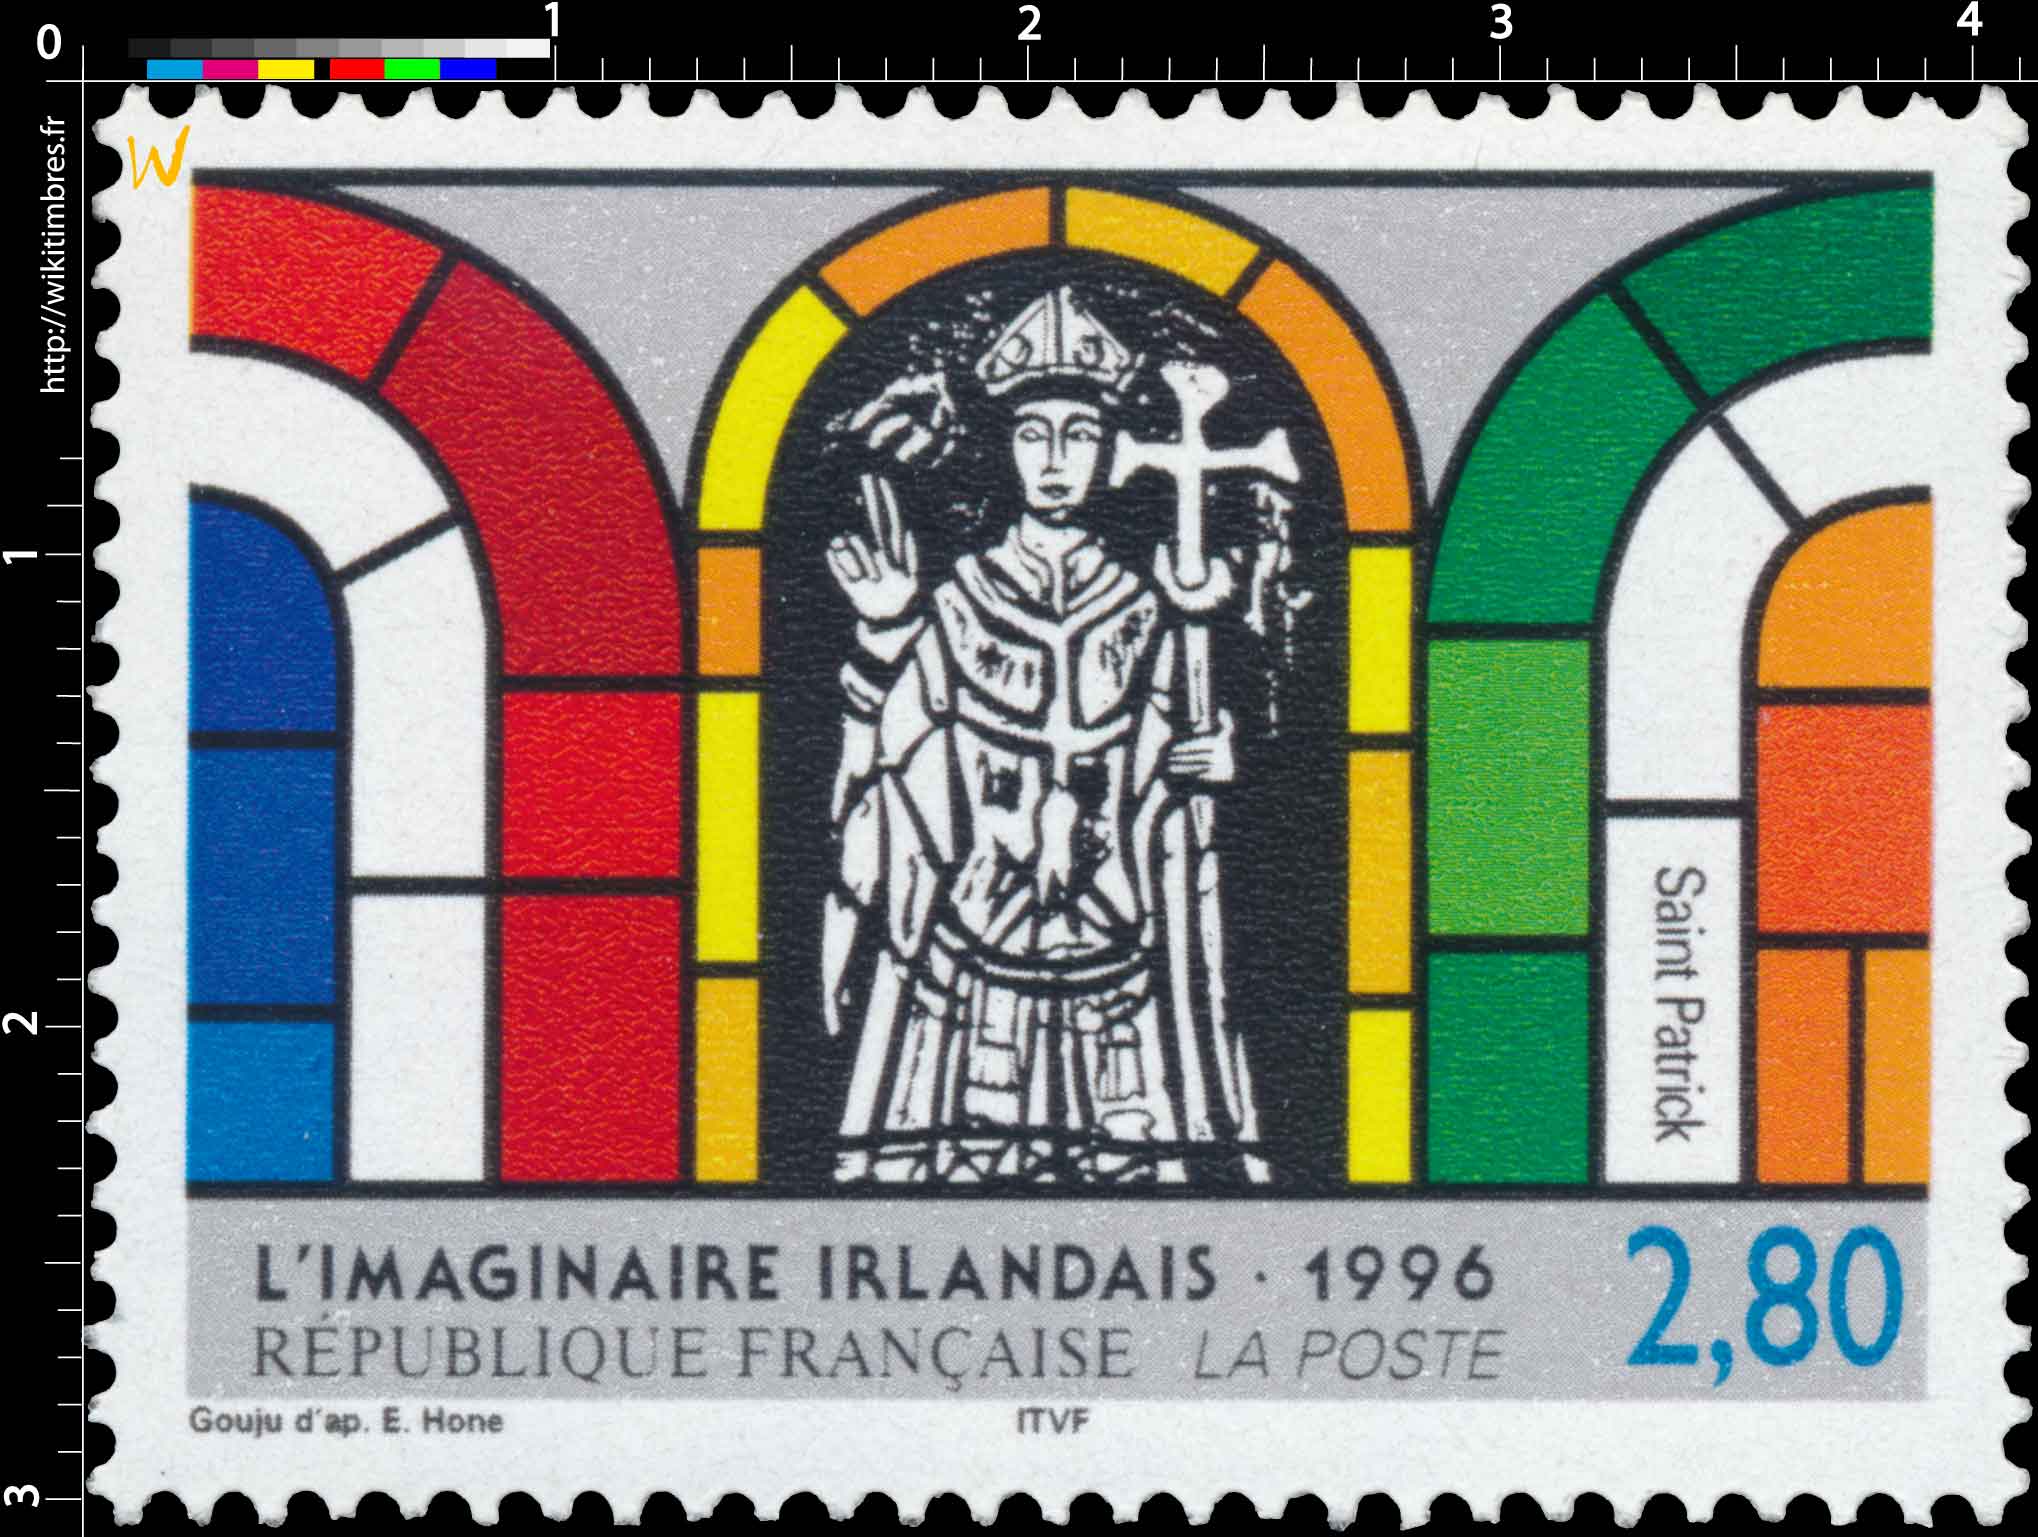 1996 L'IMAGINAIRE IRLANDAIS Saint Patrick